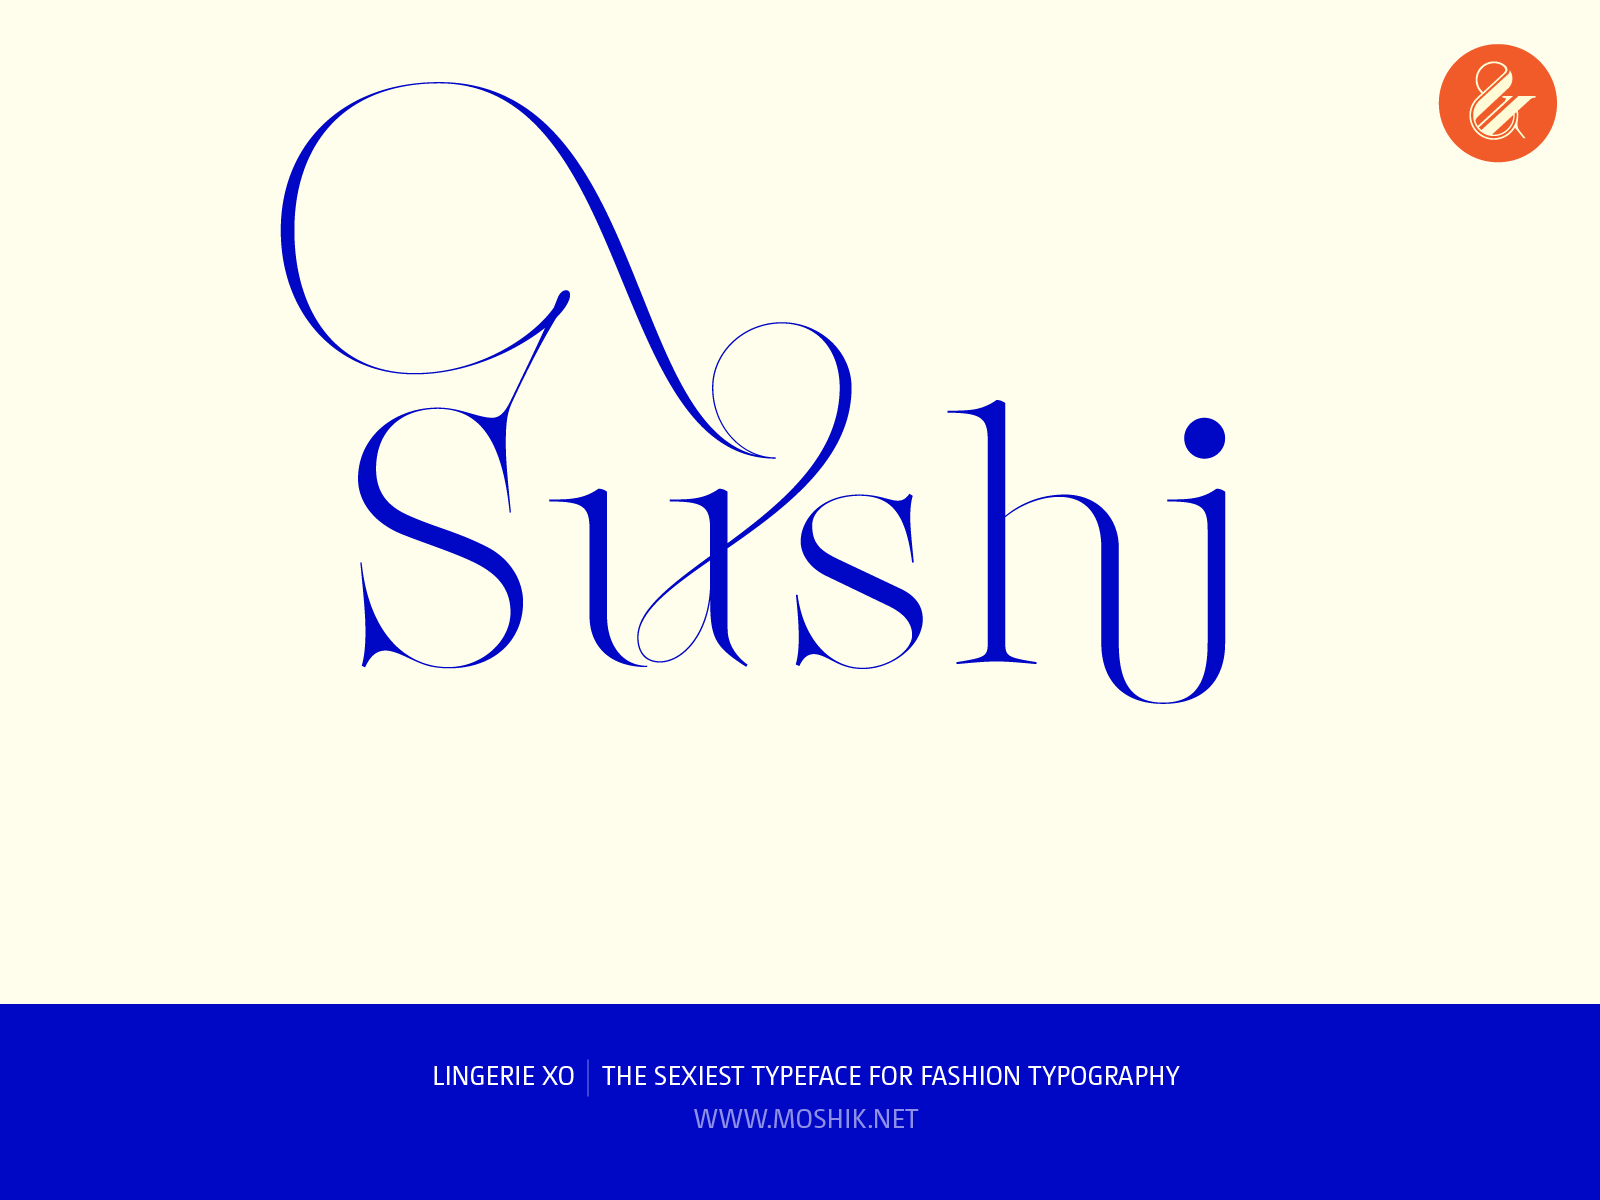 Sushi logo, Lingerie XO Typeface, fashion fonts, best fonts 2021, best fonts for logos, sexy fonts, sexy logos, Vogue fonts, Moshik Nadav, Fashion magazine fonts, Must have fonts